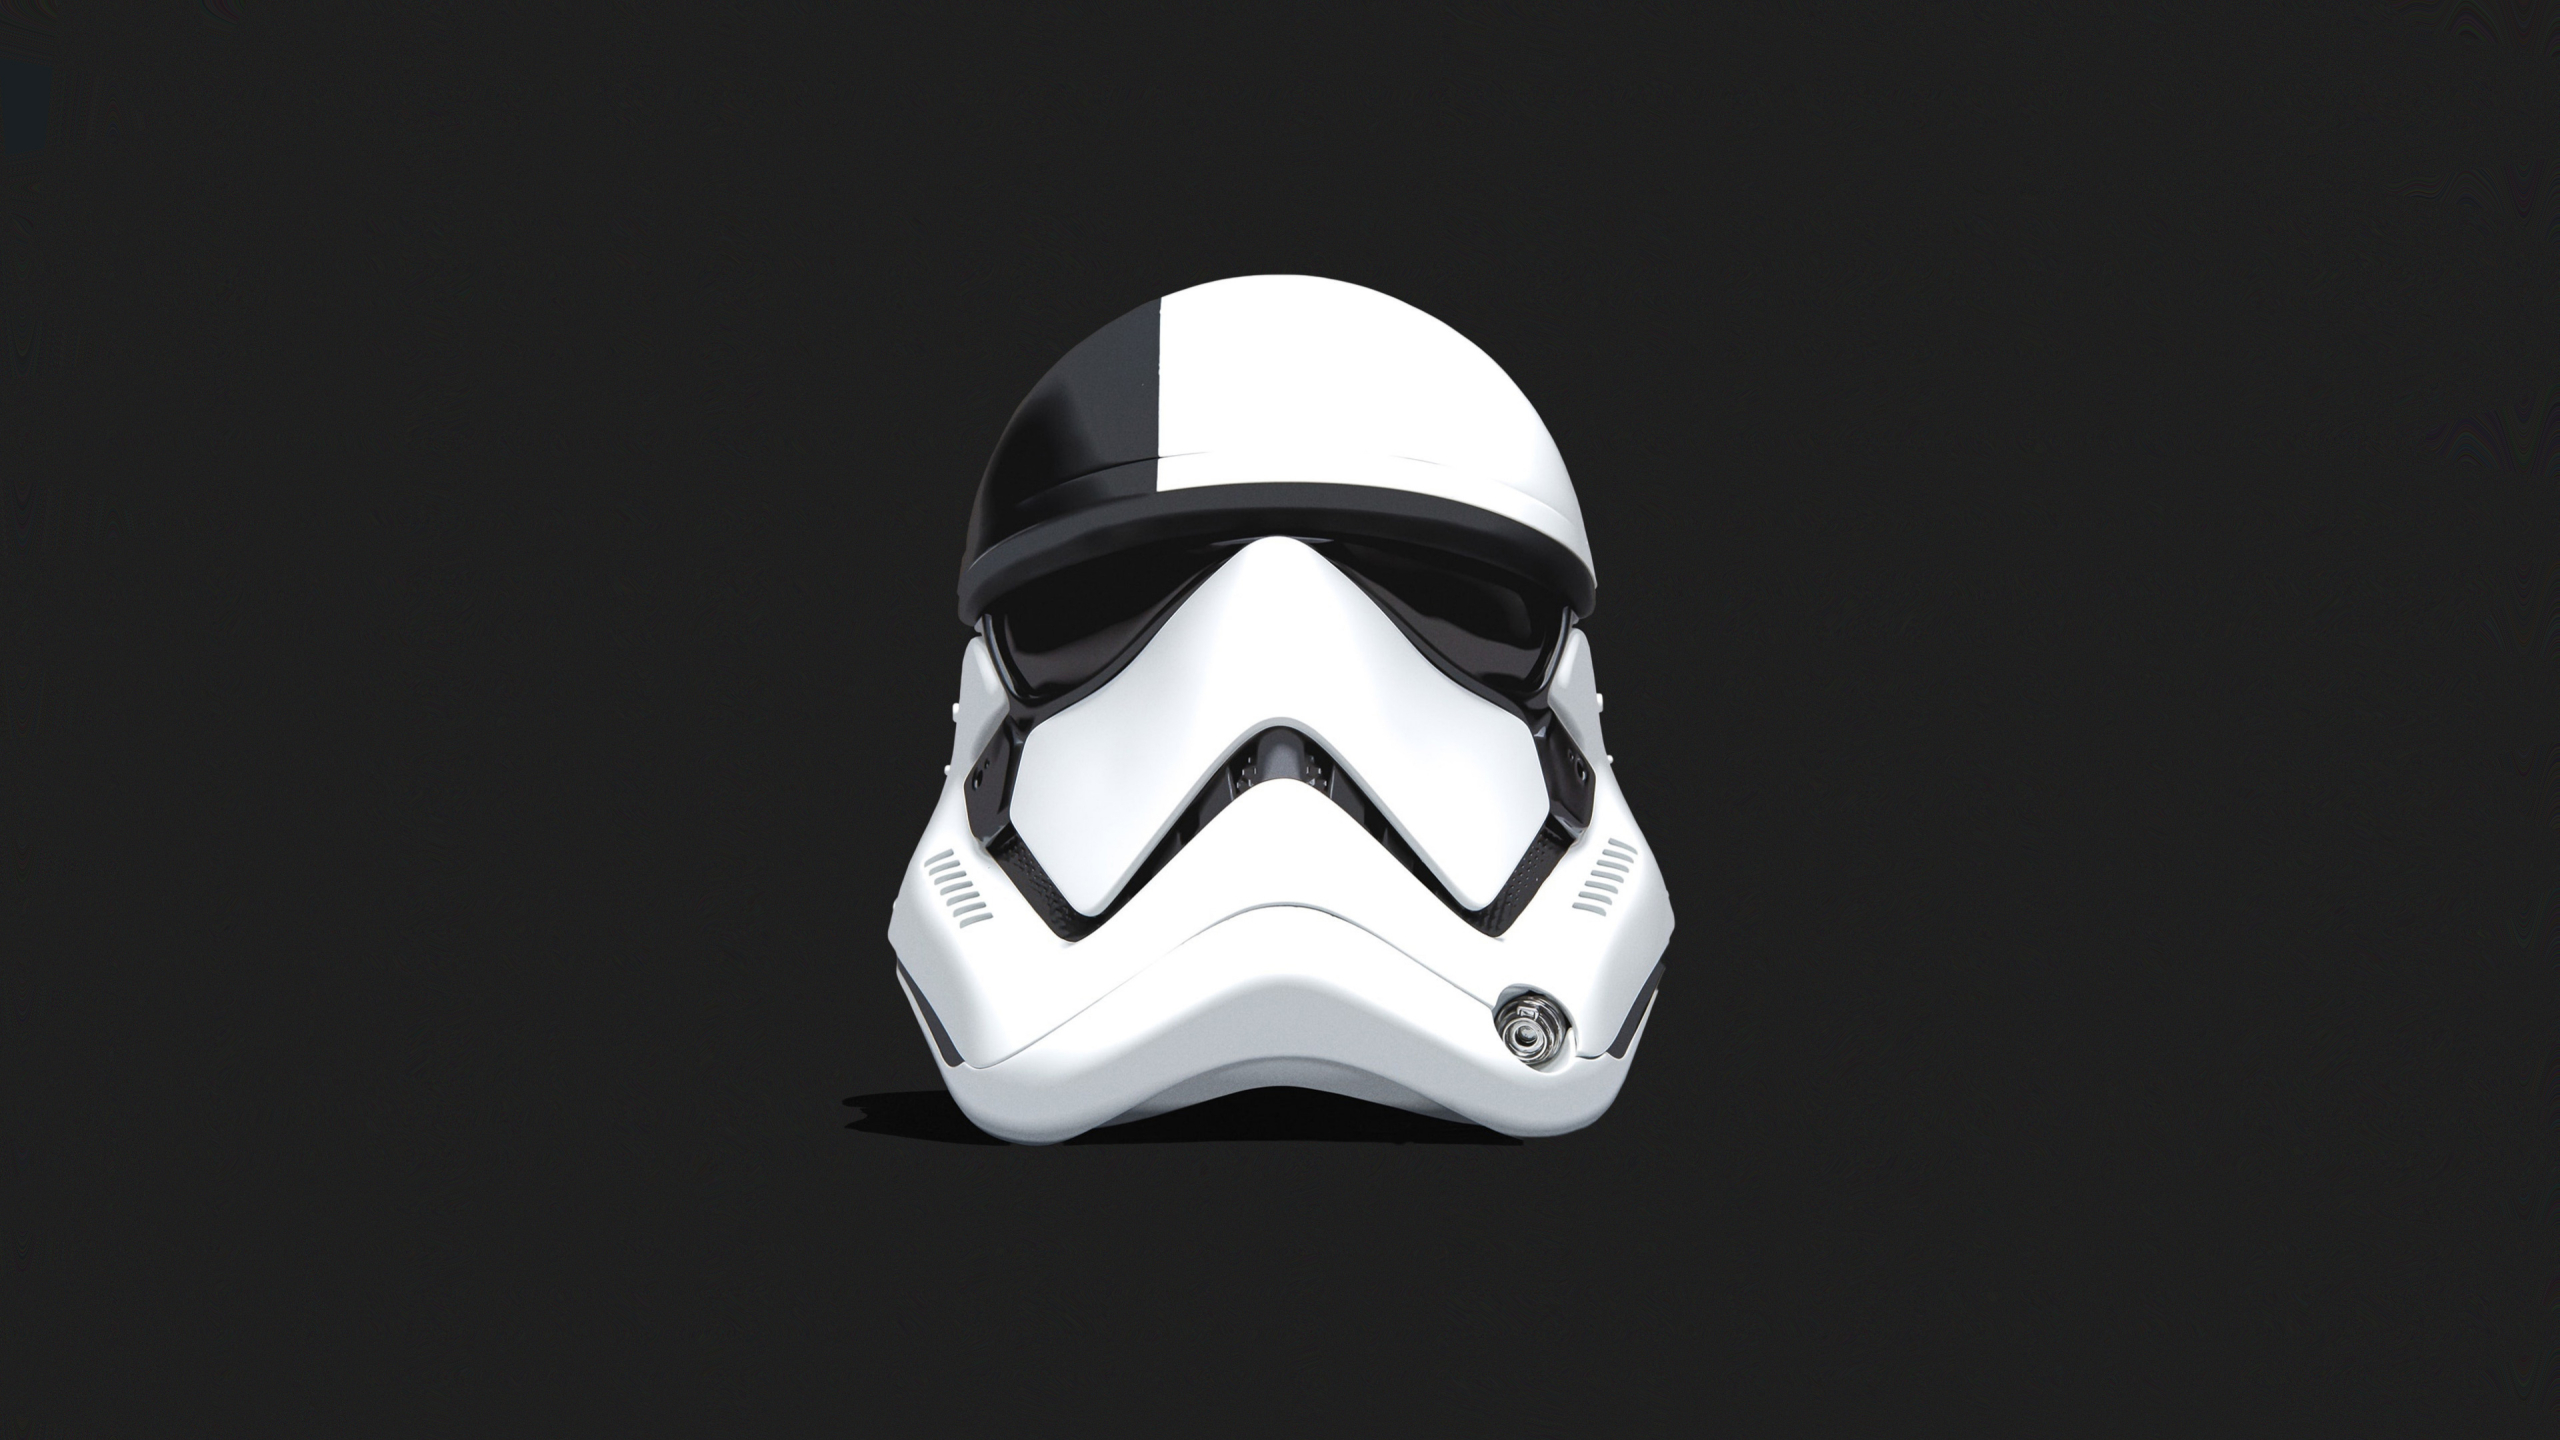 2560x1440 Stormtrooper Helmet Star Wars